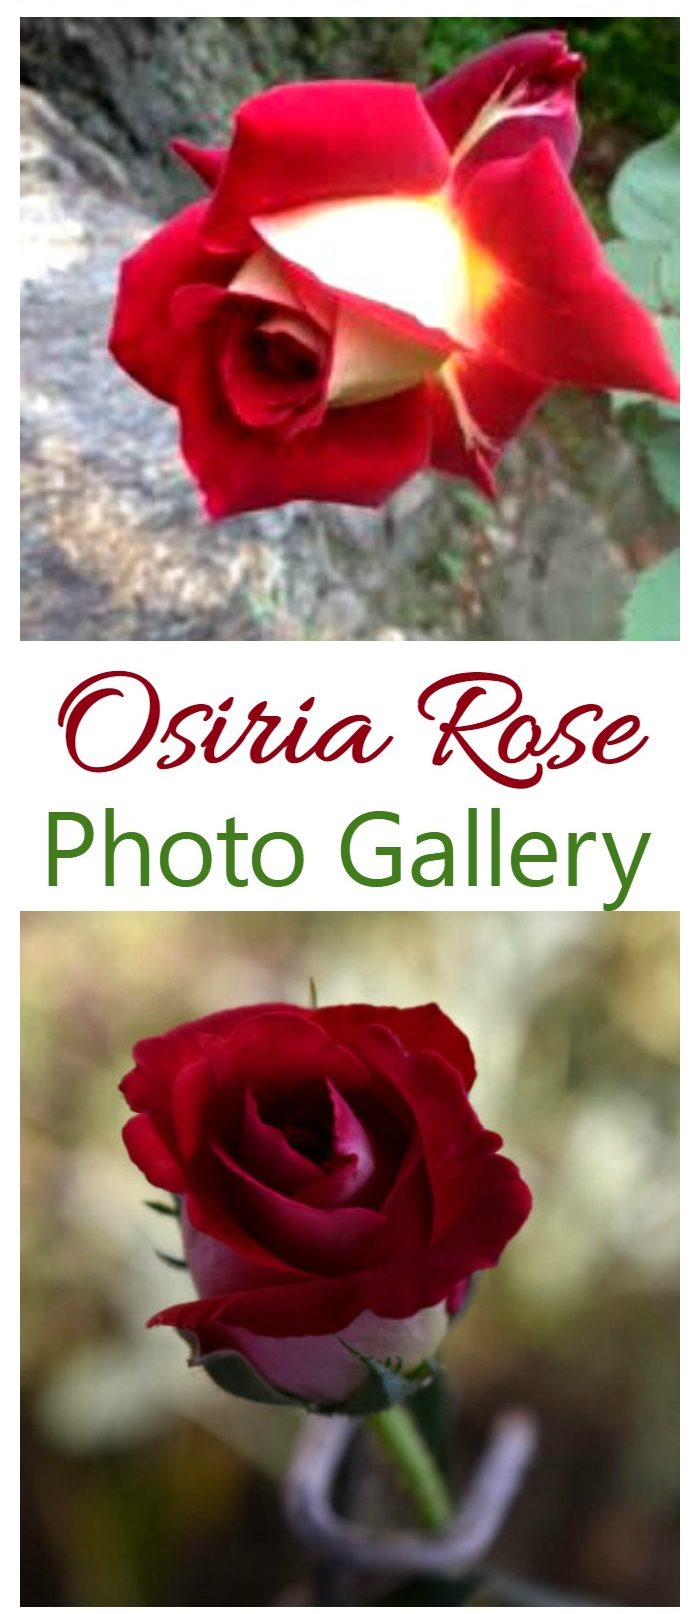 हाइब्रिड चिया गुलाब खोज्न यो गाह्रो को ओसिरिया गुलाब फोटो ग्यालेरी